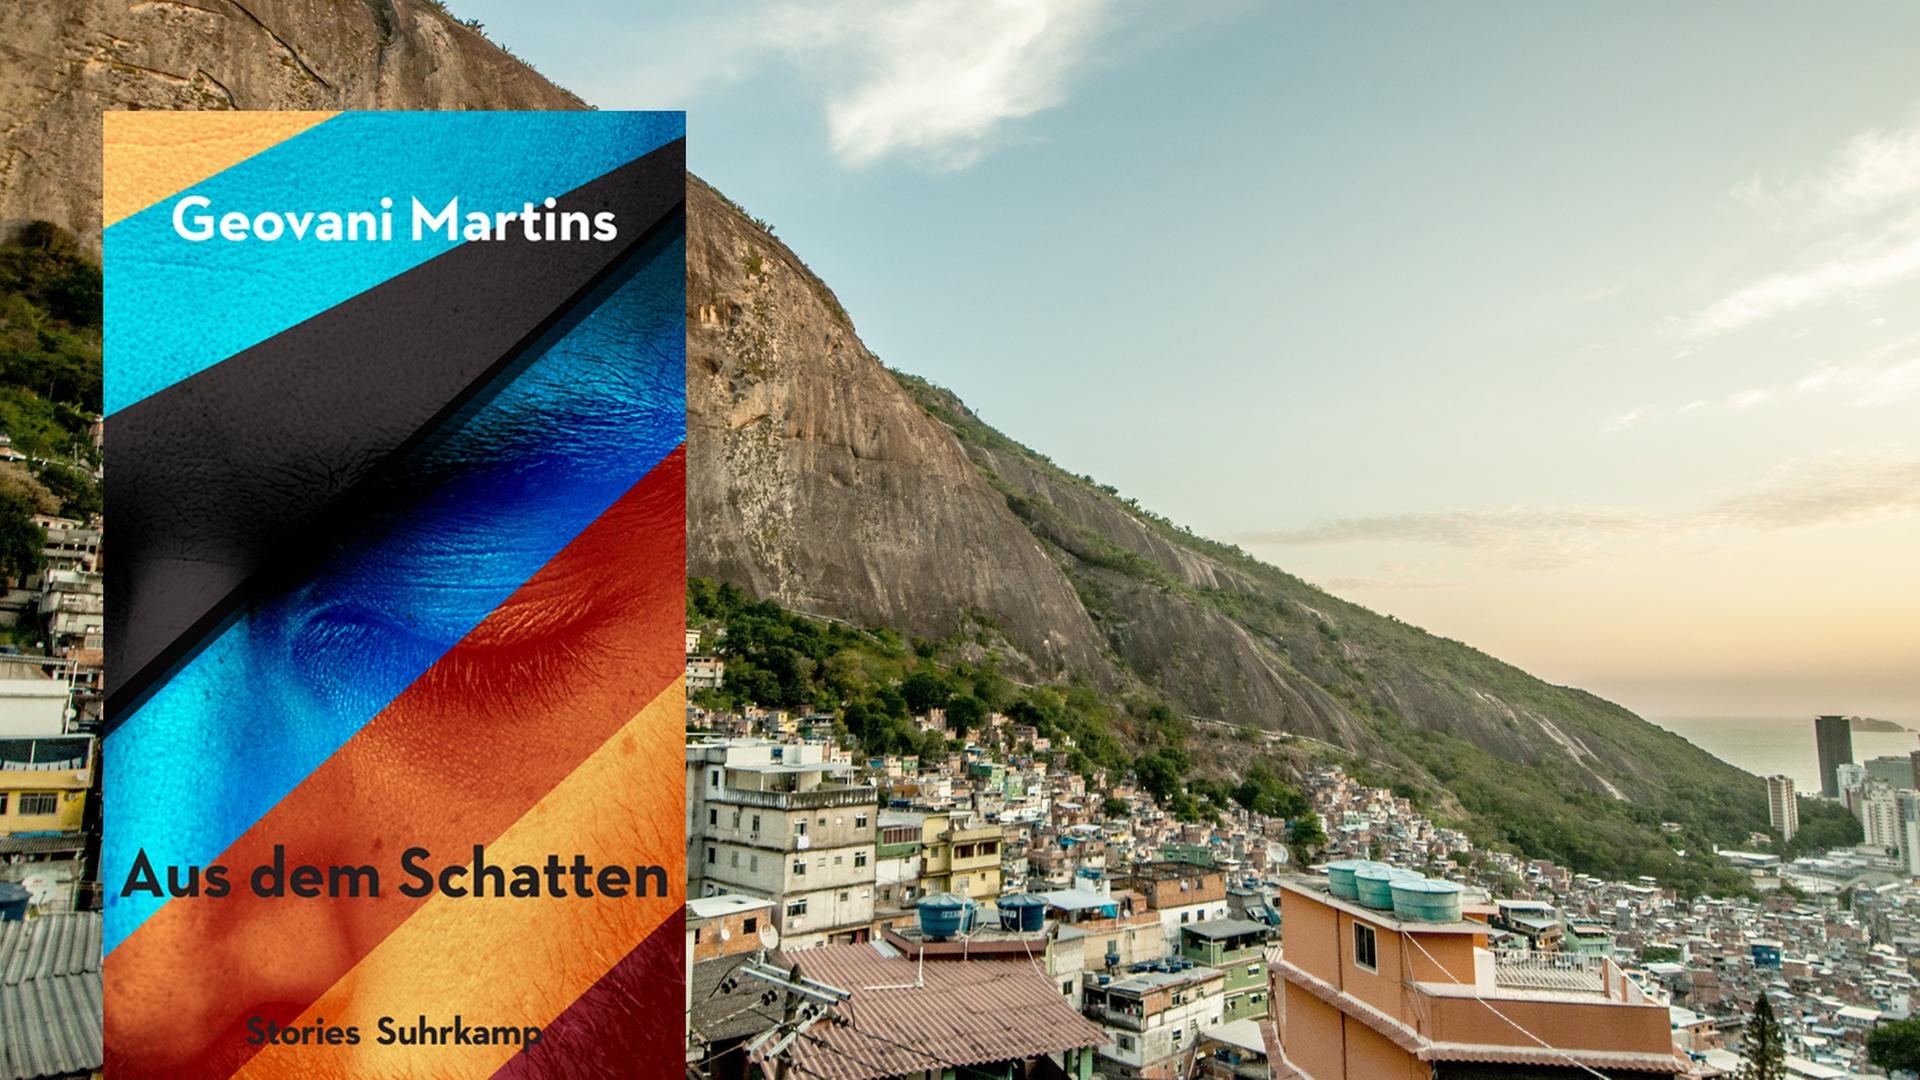 Cover von Geovani Martins Roman "Aus dem Schatten". Im Hintergrund ist Rocinha zu sehen, ein Favela in Rio de Janeiro.